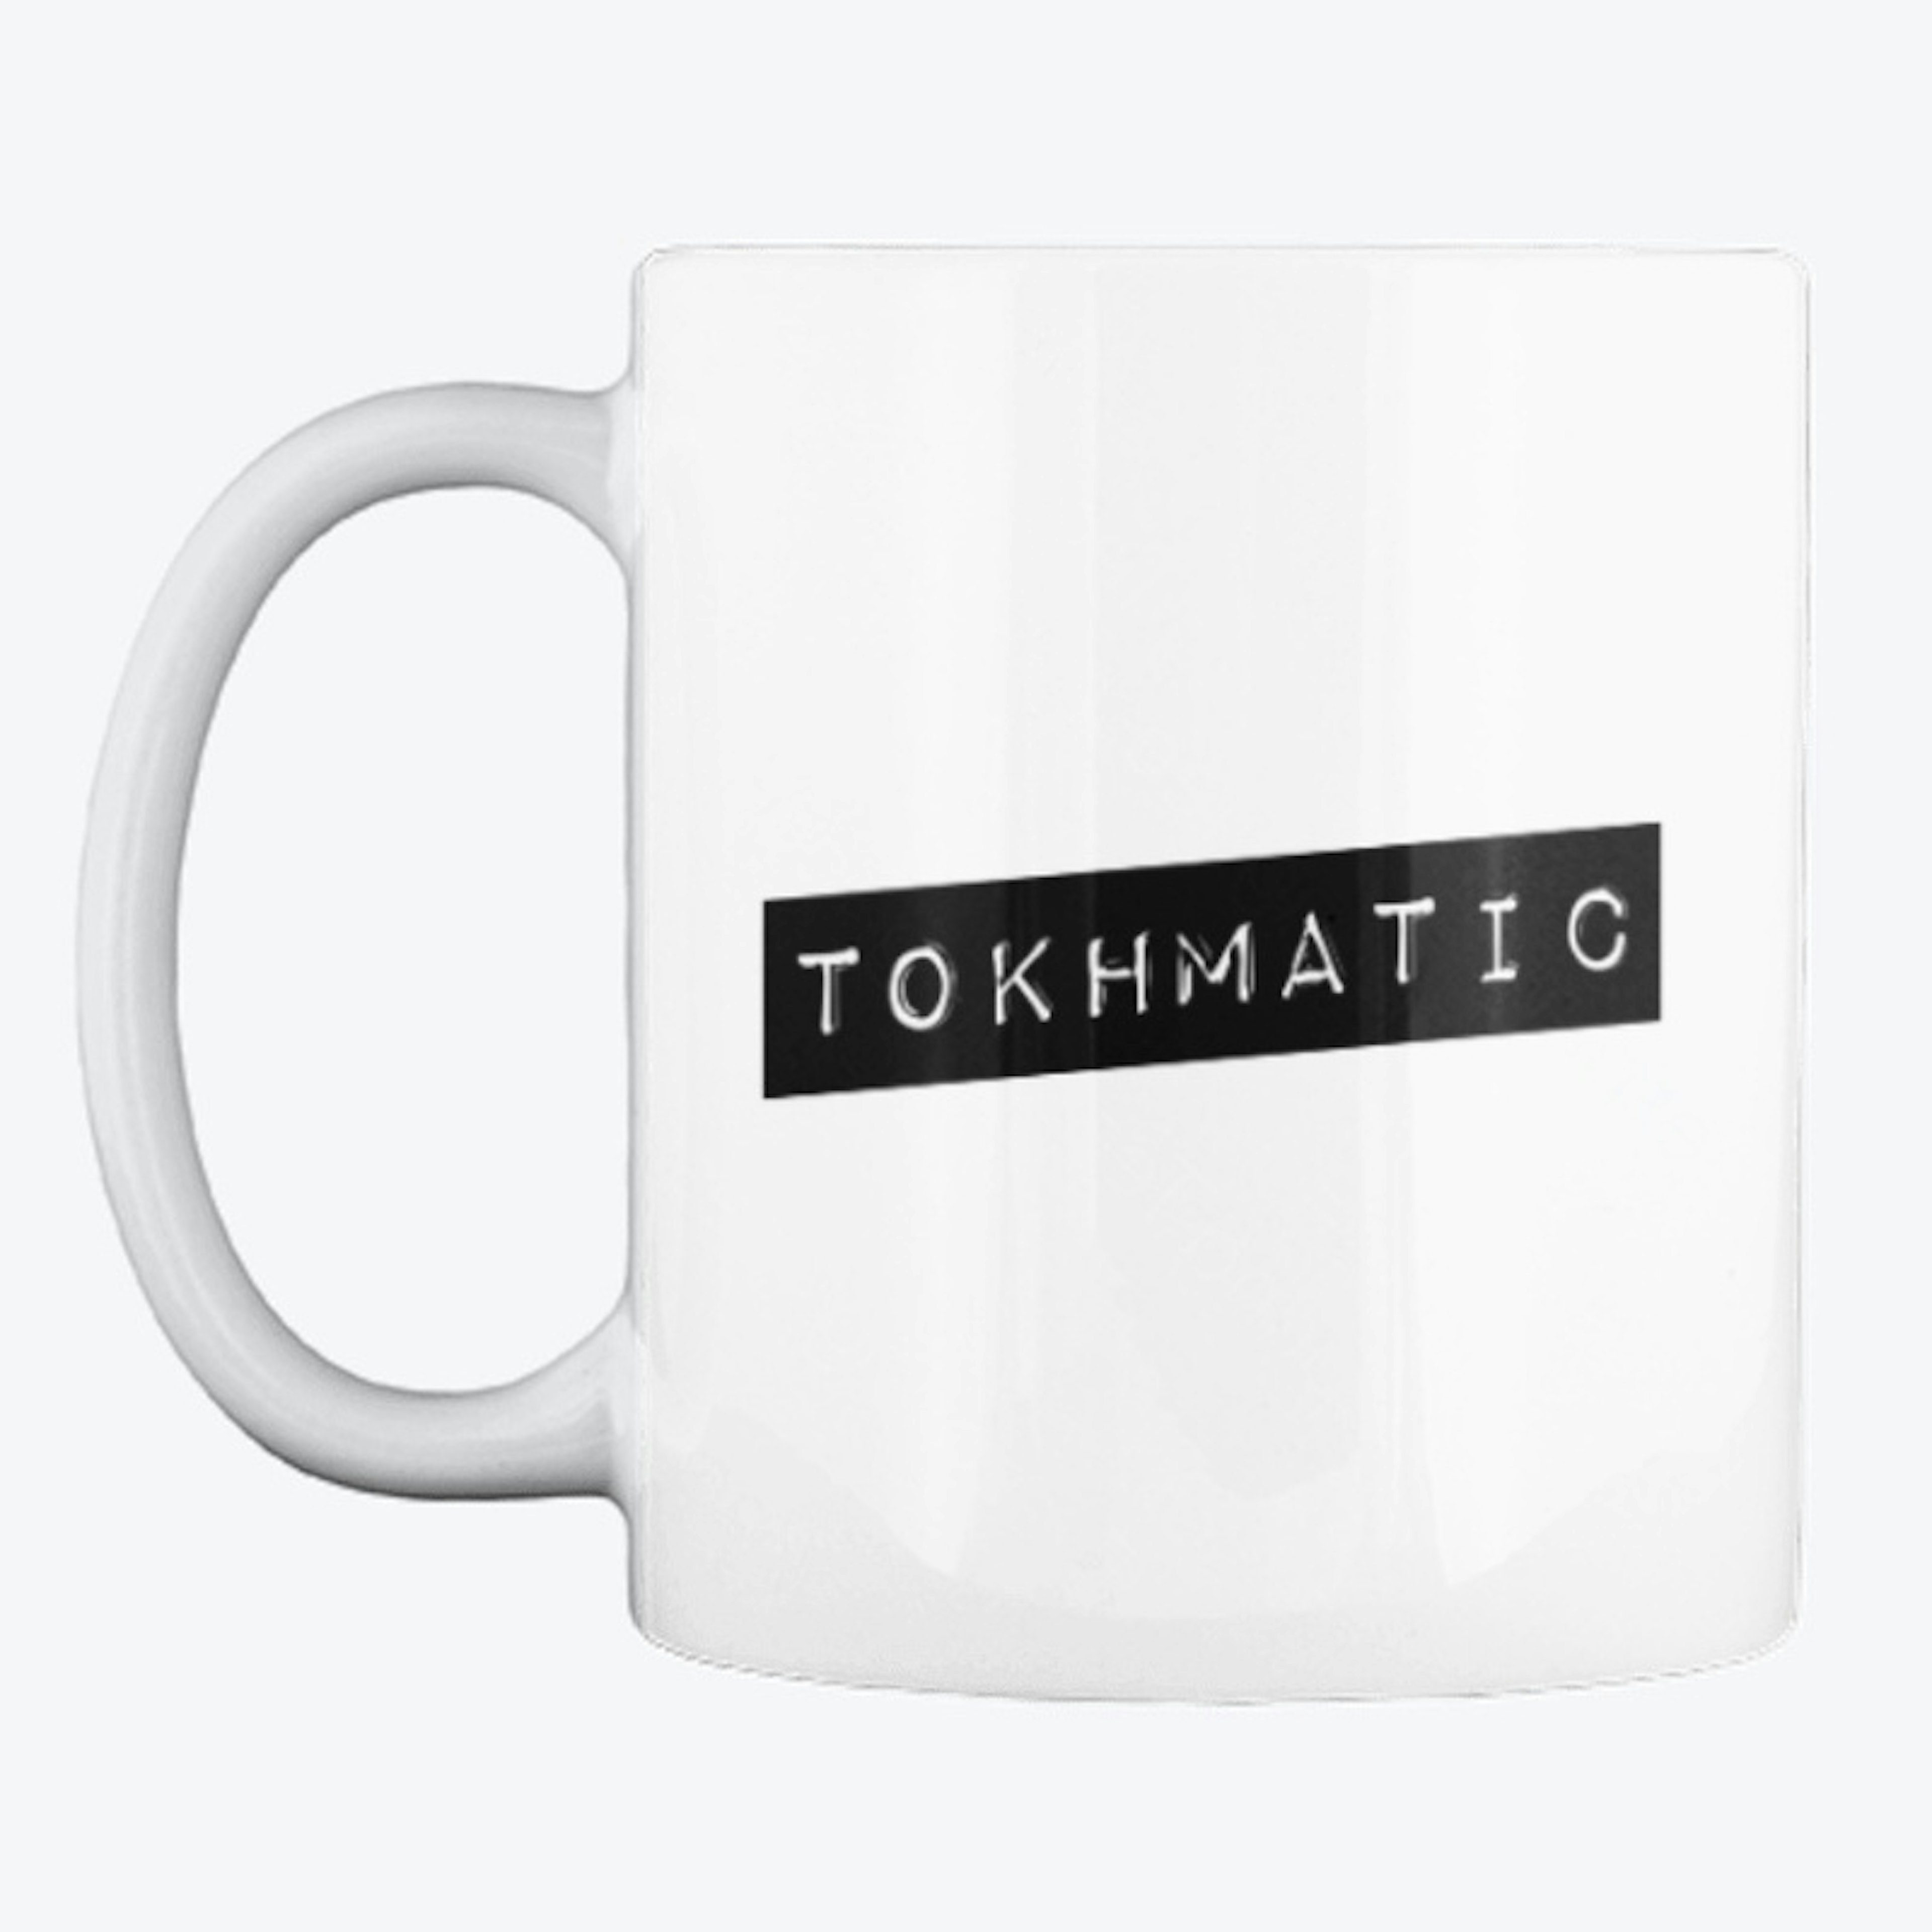 tokhmatic